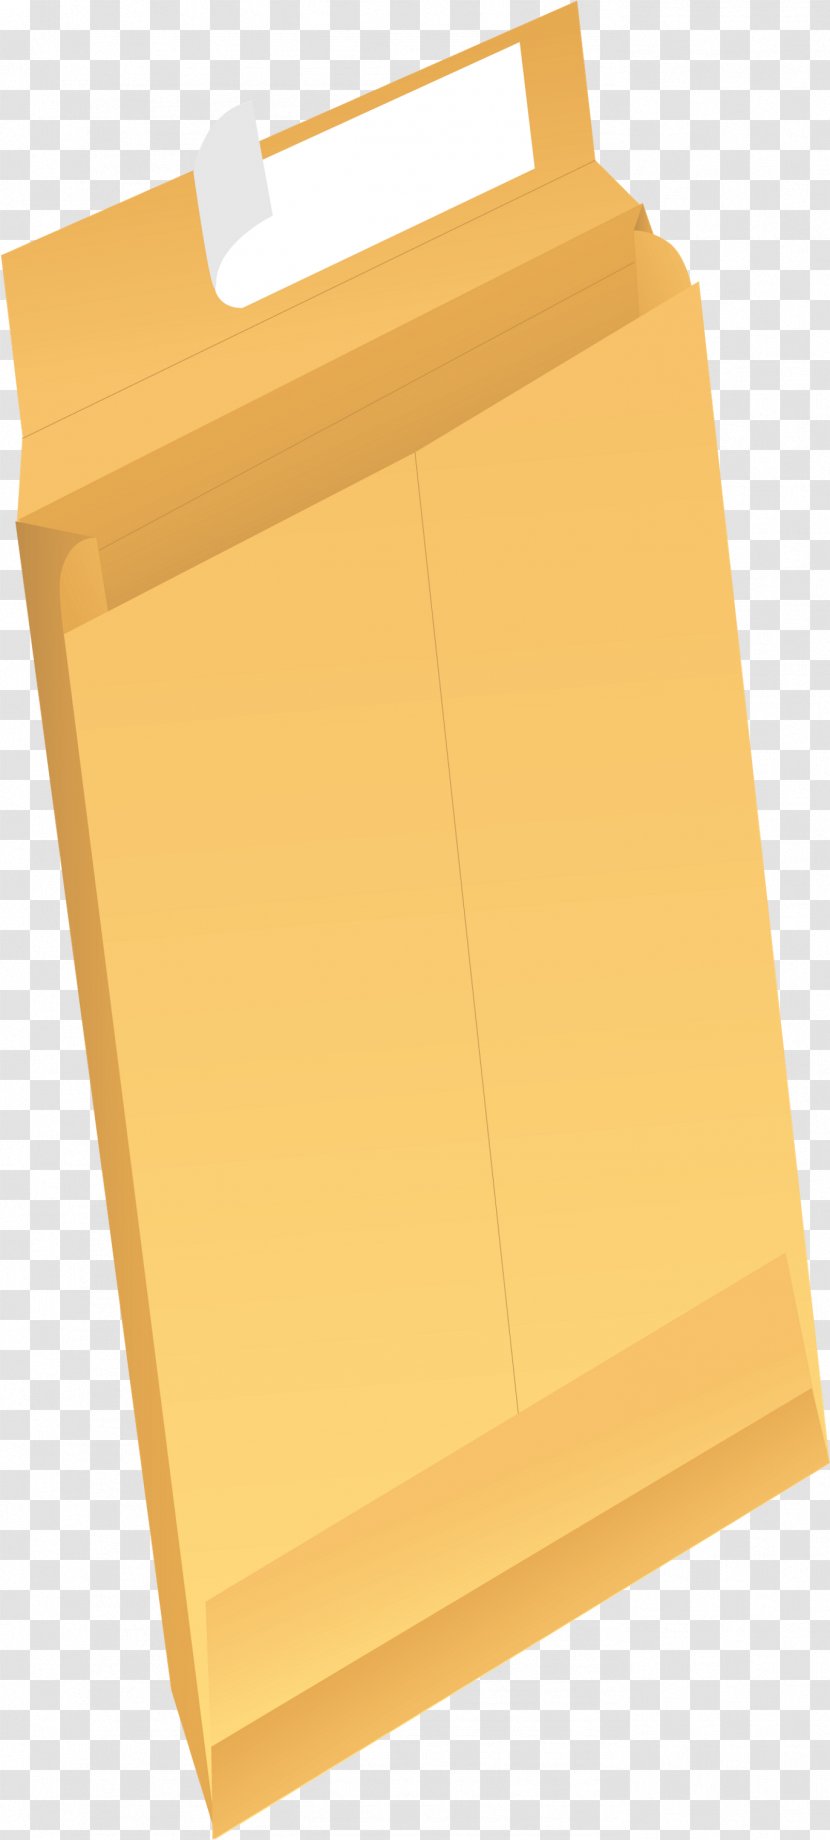 Box Background - Paper - Folder Transparent PNG